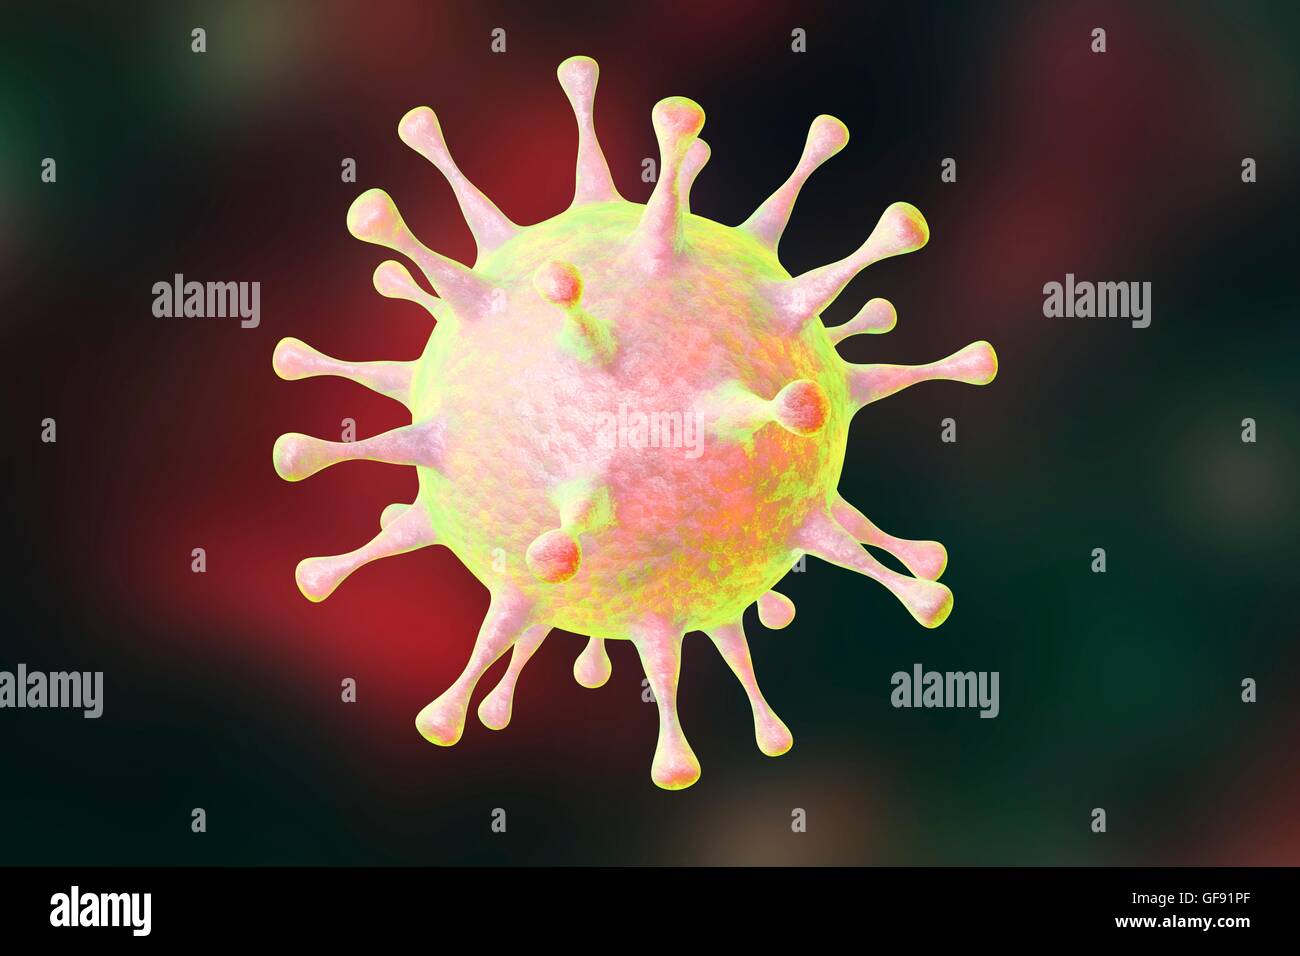 Human pathogenic virus, computer illustration. Stock Photo